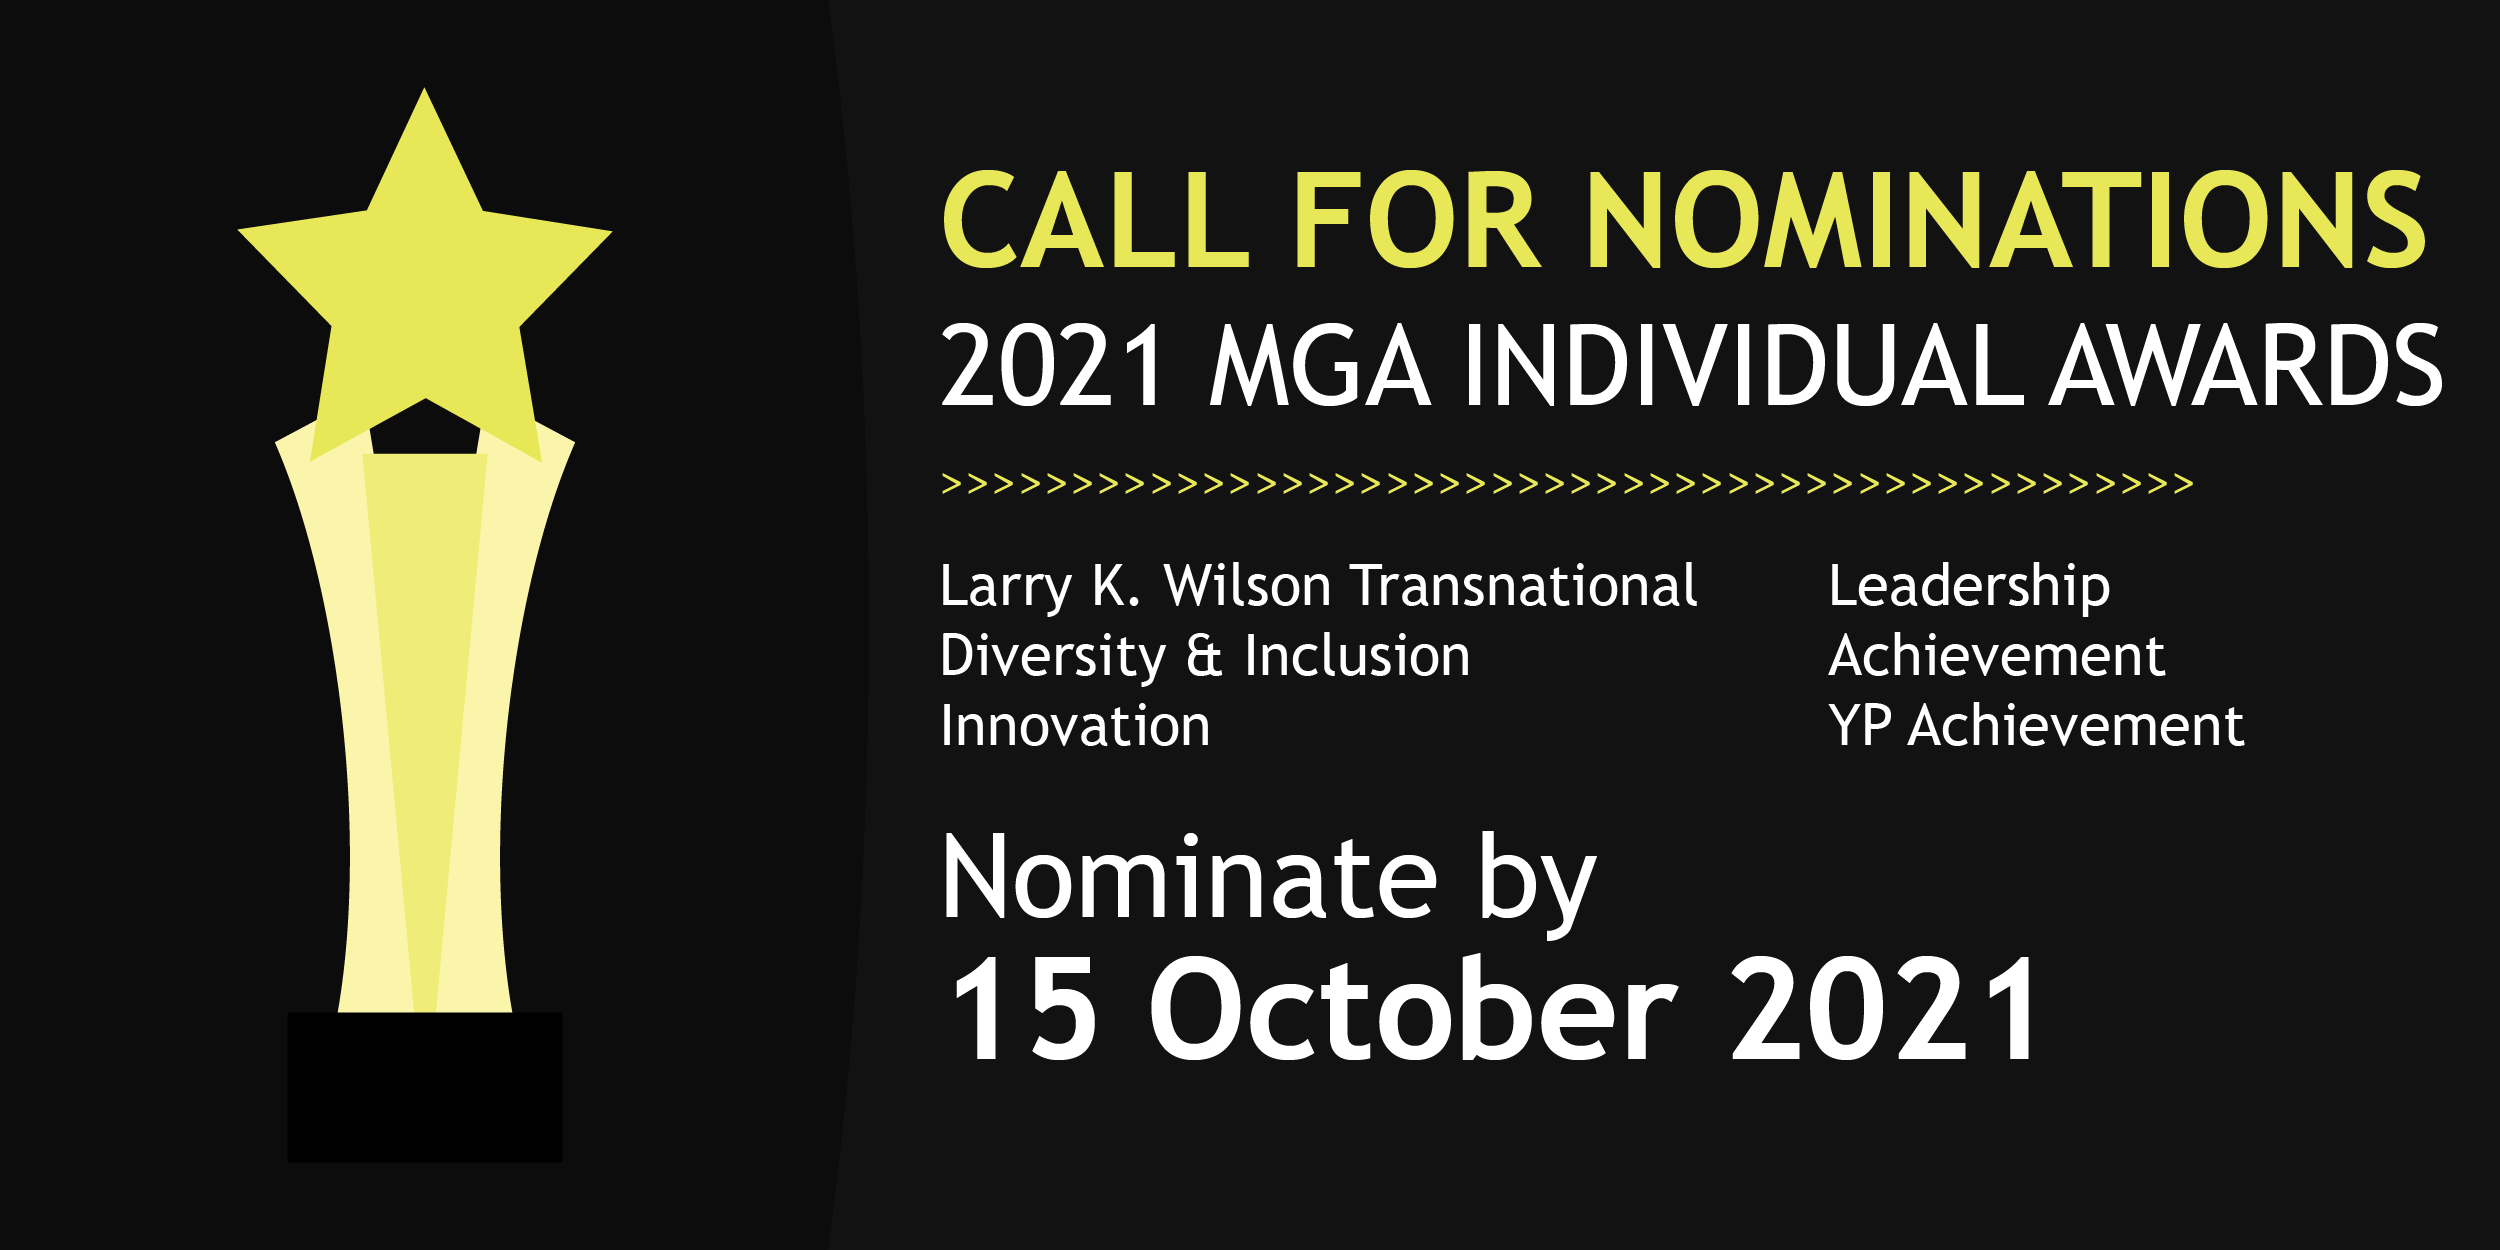 Call for Nominations - 2021 MGA Individual Awards Program